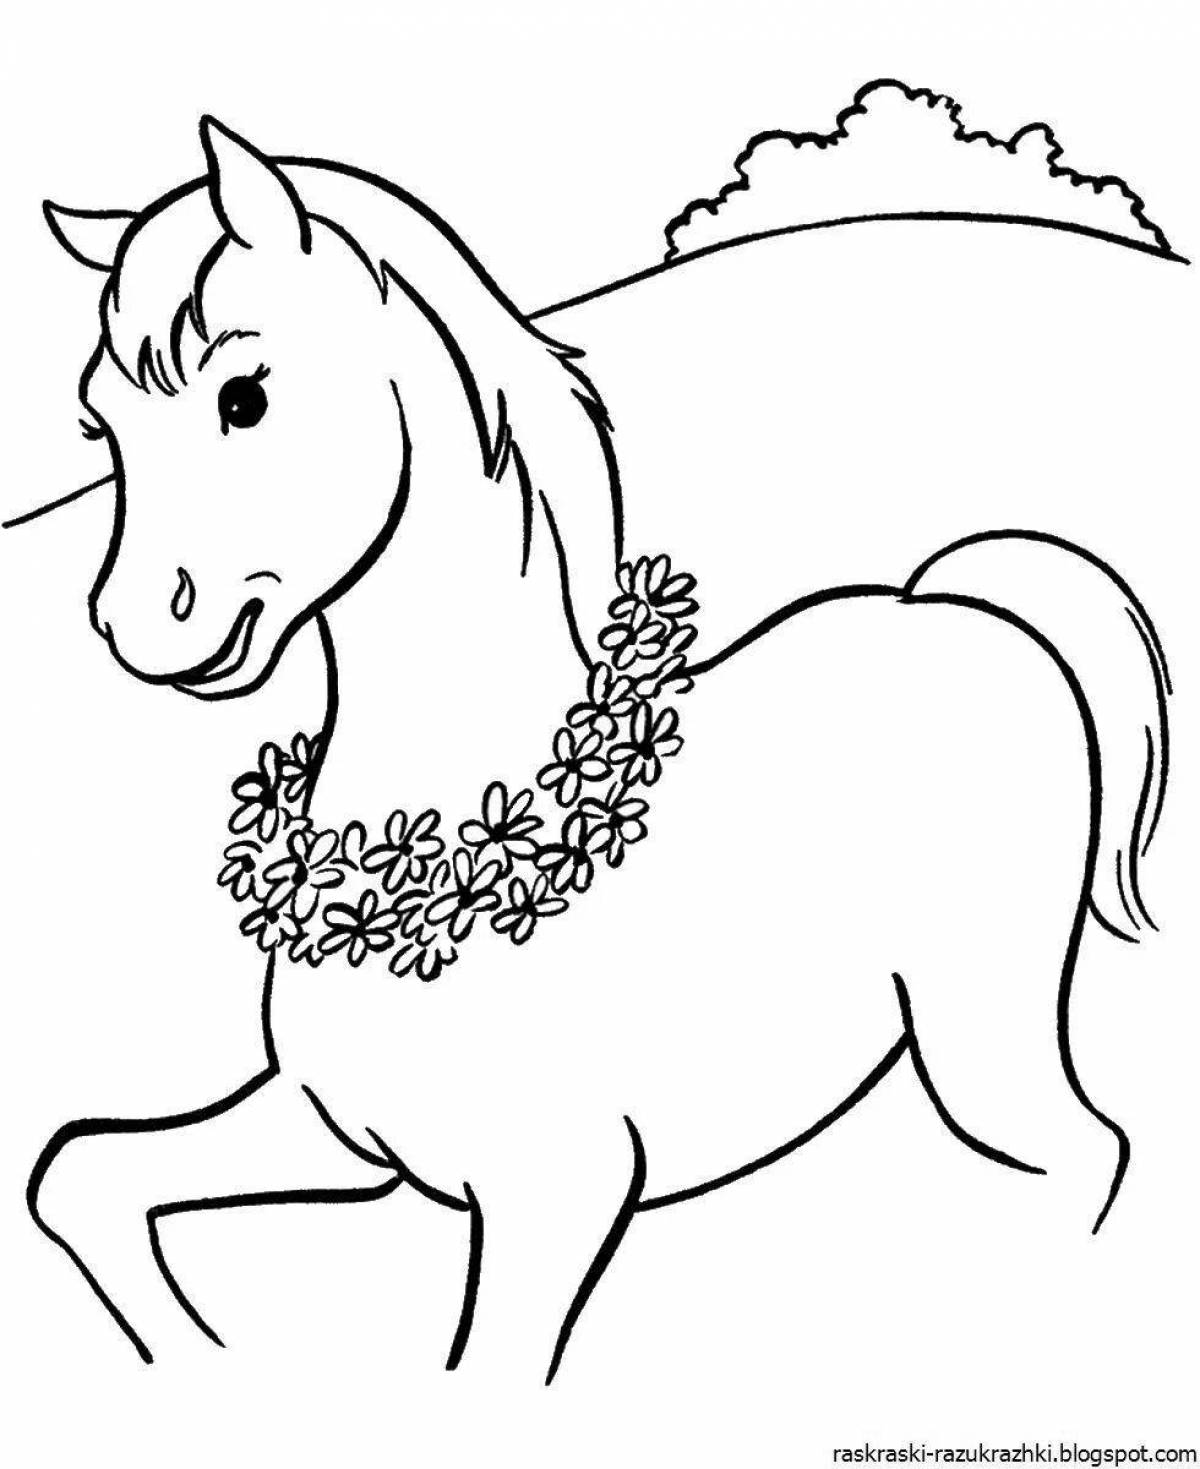 Великолепная раскраска лошадь для детей 6-7 лет